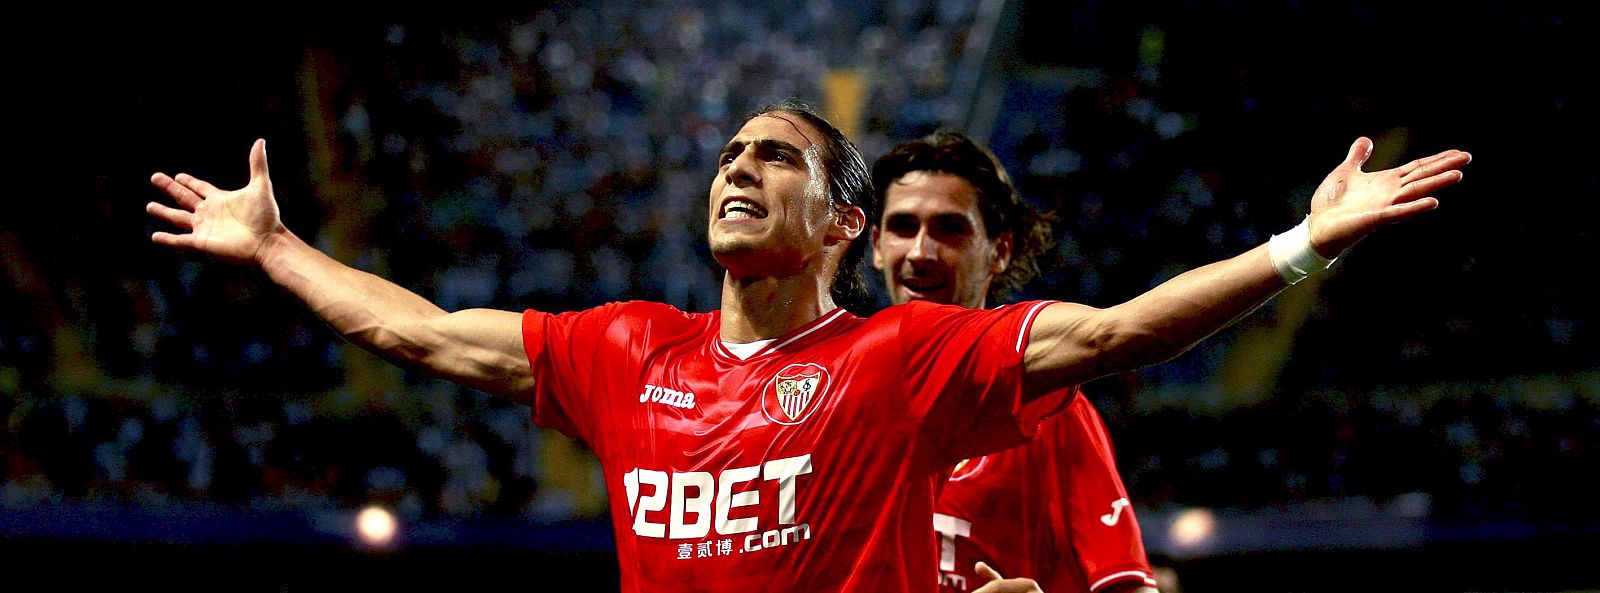 El defensa del Sevilla FC, Martín Cáceres (c), celebra su gol, segundo de su equipo